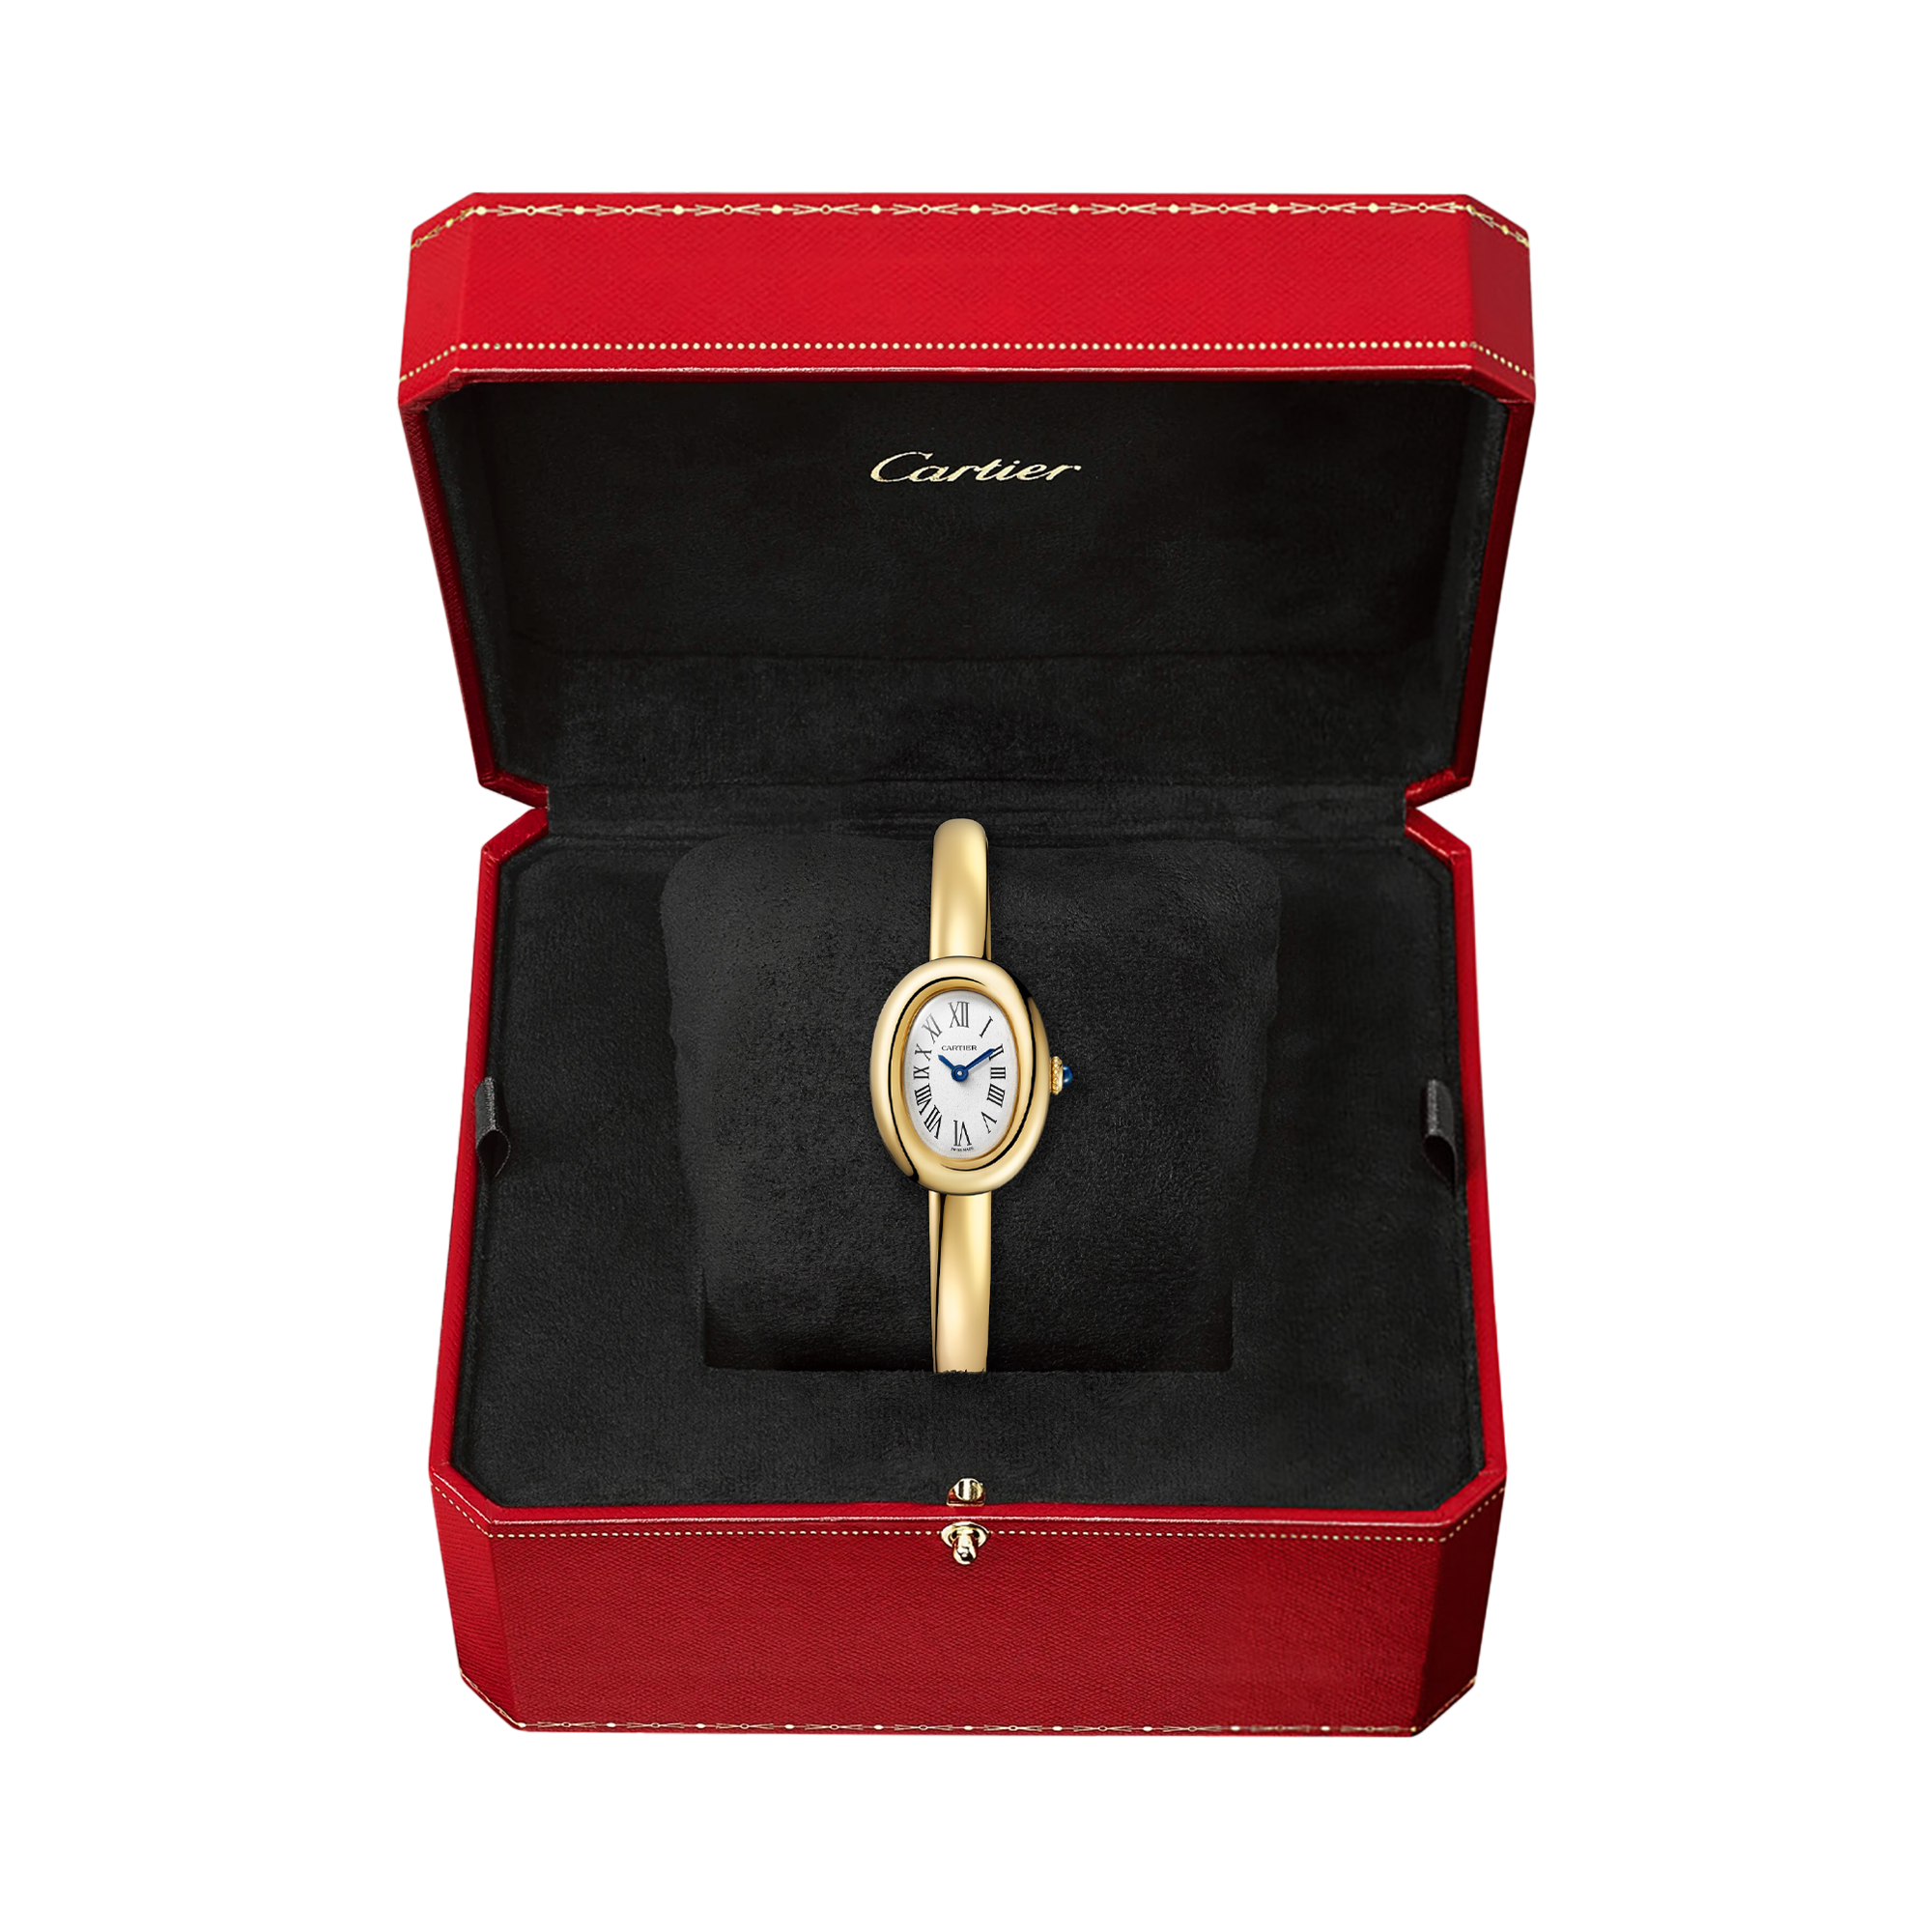 Cartier Baignoire Mini 18mm, Silver Dial, Roman Numerals_5